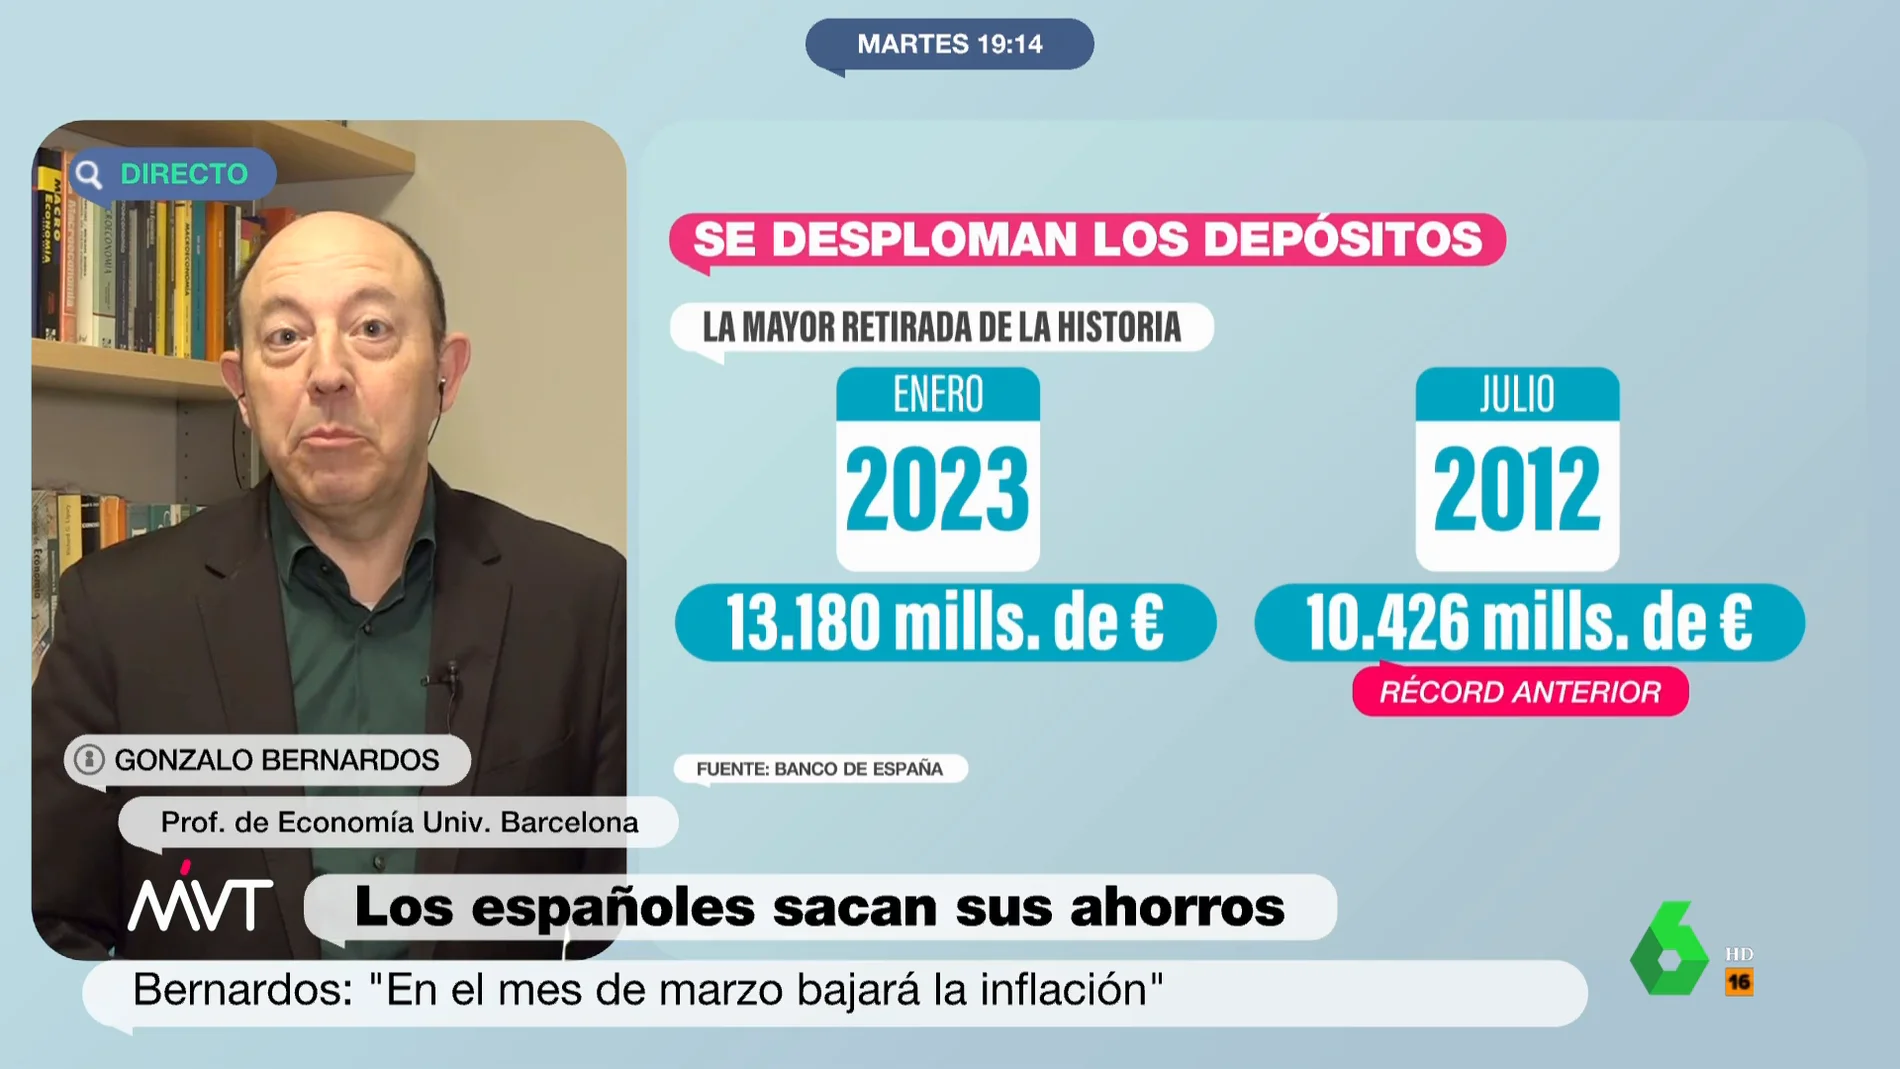 La recomendación de Gonzalo Bernardos si el banco te ofrece un fondo de inversión: "Cuidado con esto!